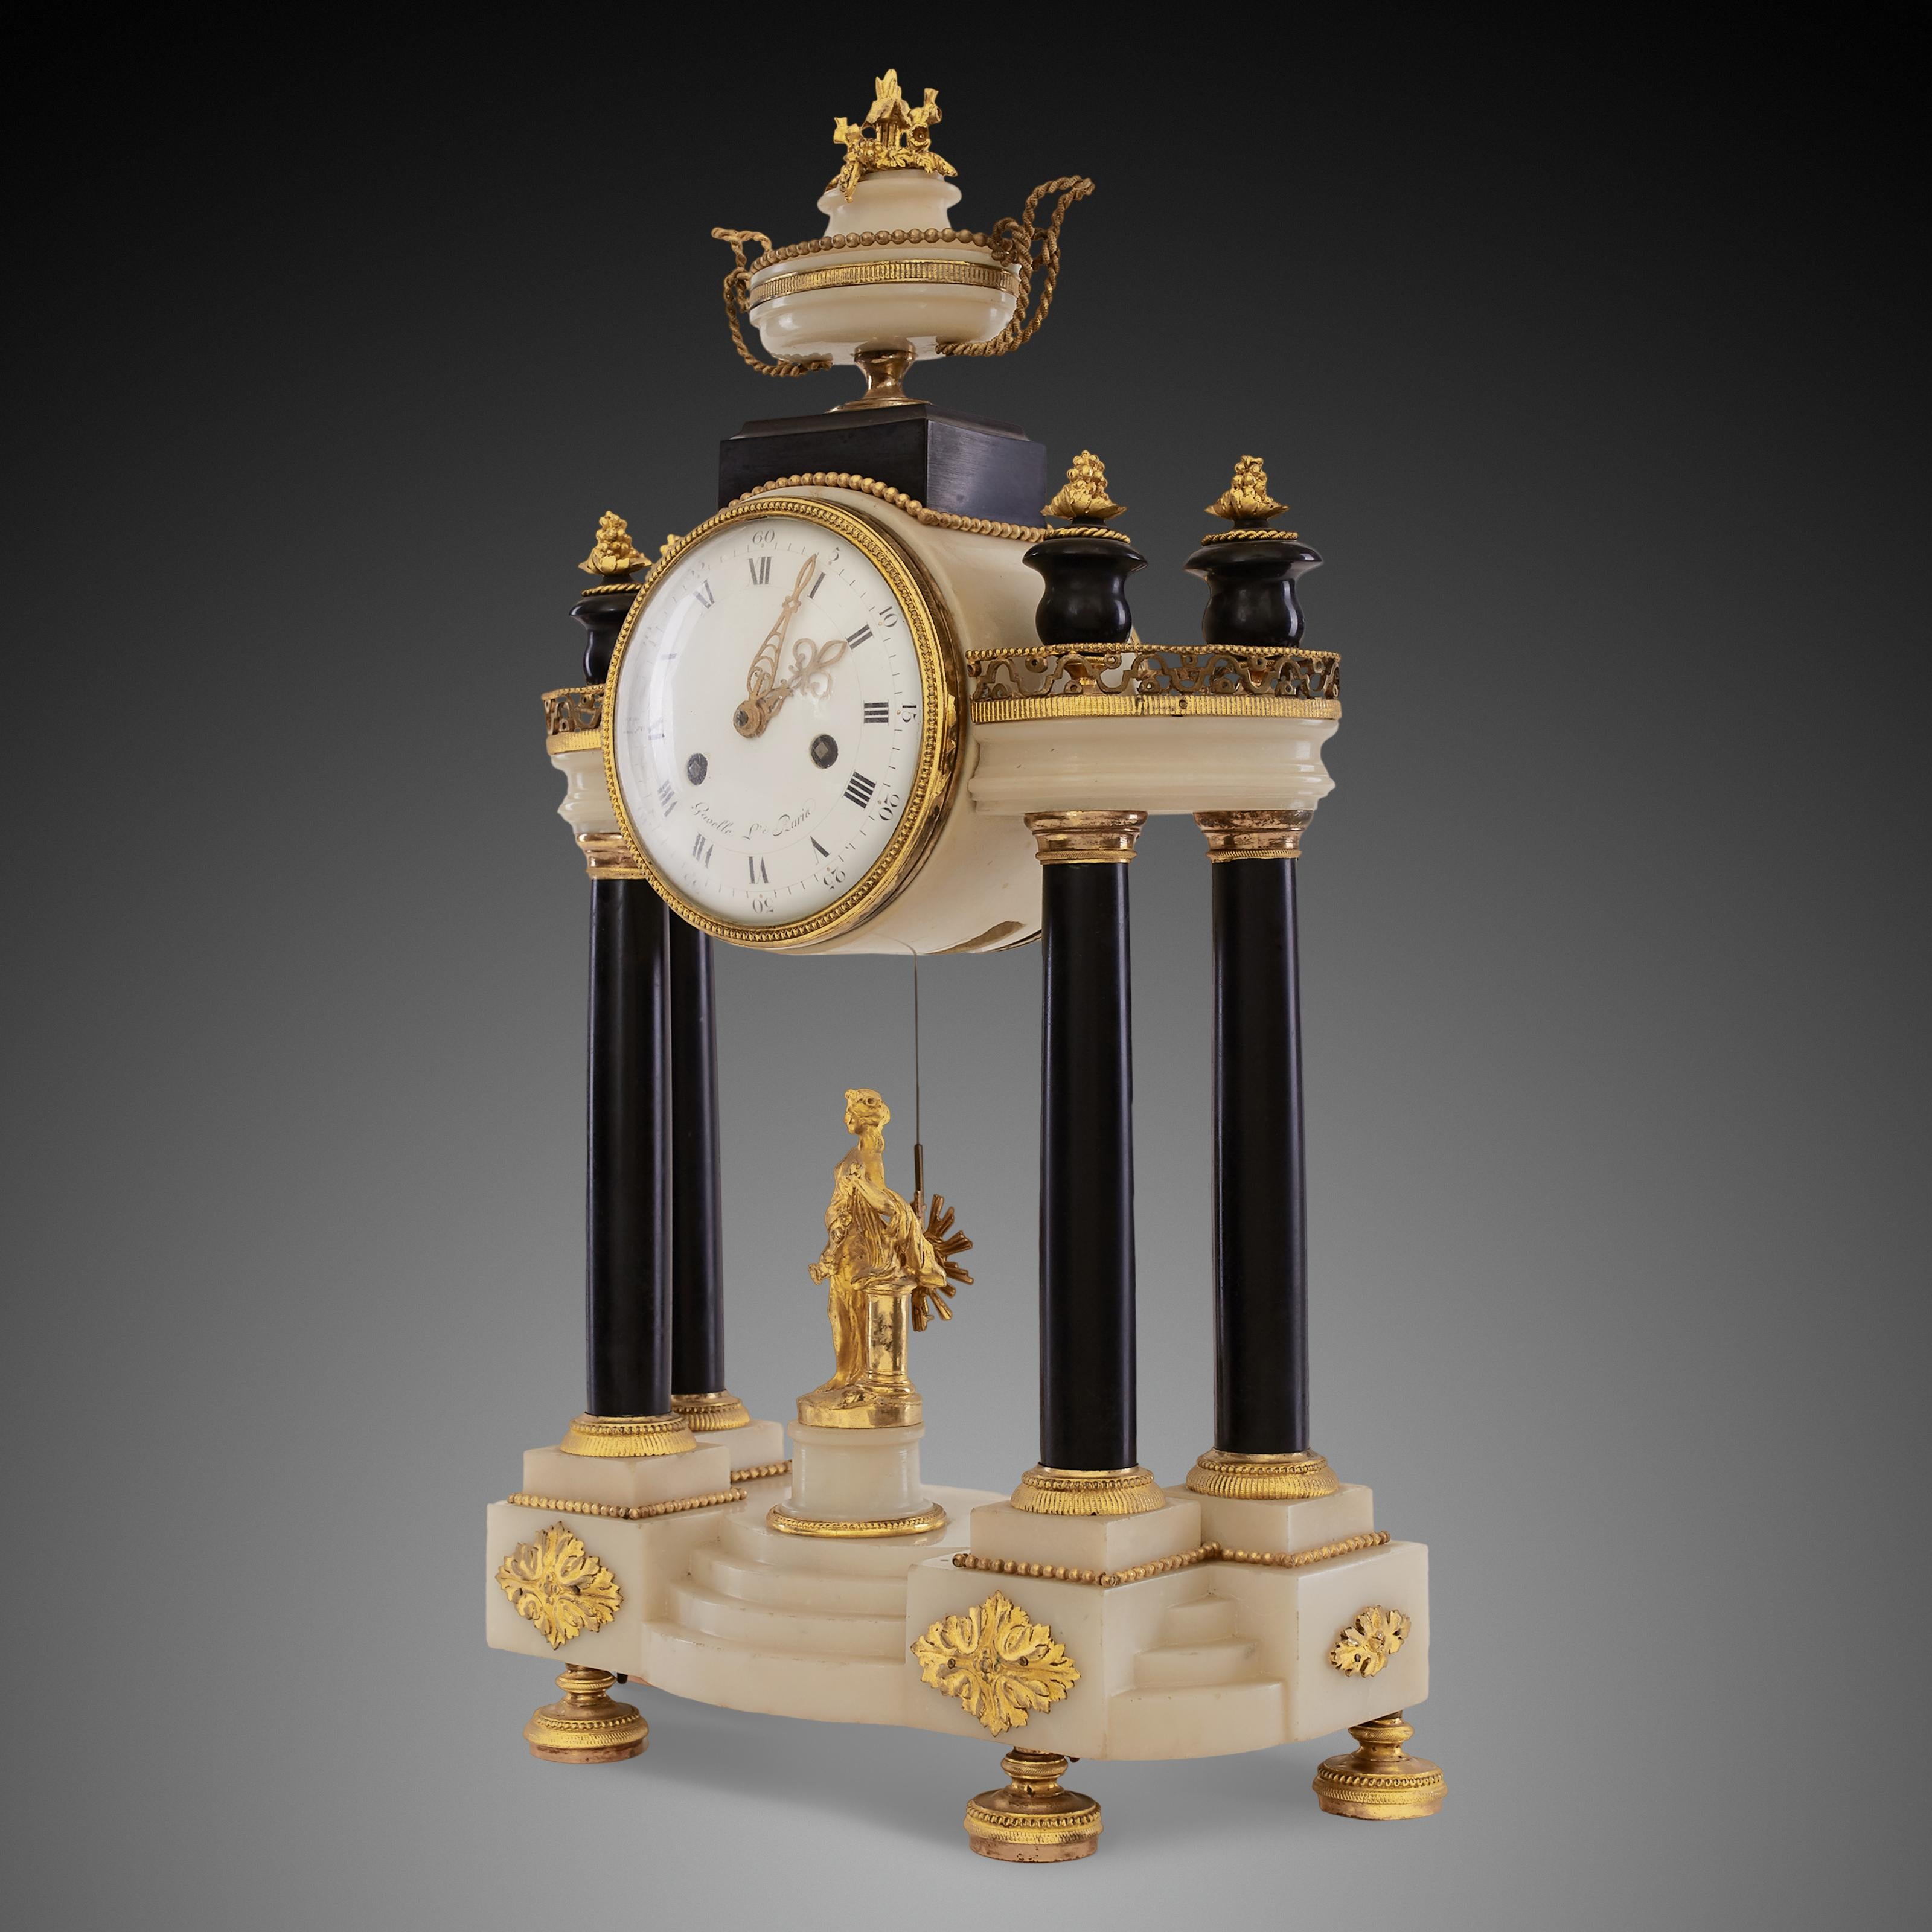 Cette horloge française ancienne à portique est fabriquée dans le style Empire sous le règne de Napoléon au 19e siècle. Le style Empire donne à l'horloge ancienne une symétrie de part et d'autre. Lorsqu'on l'observe de près, les deux côtés du